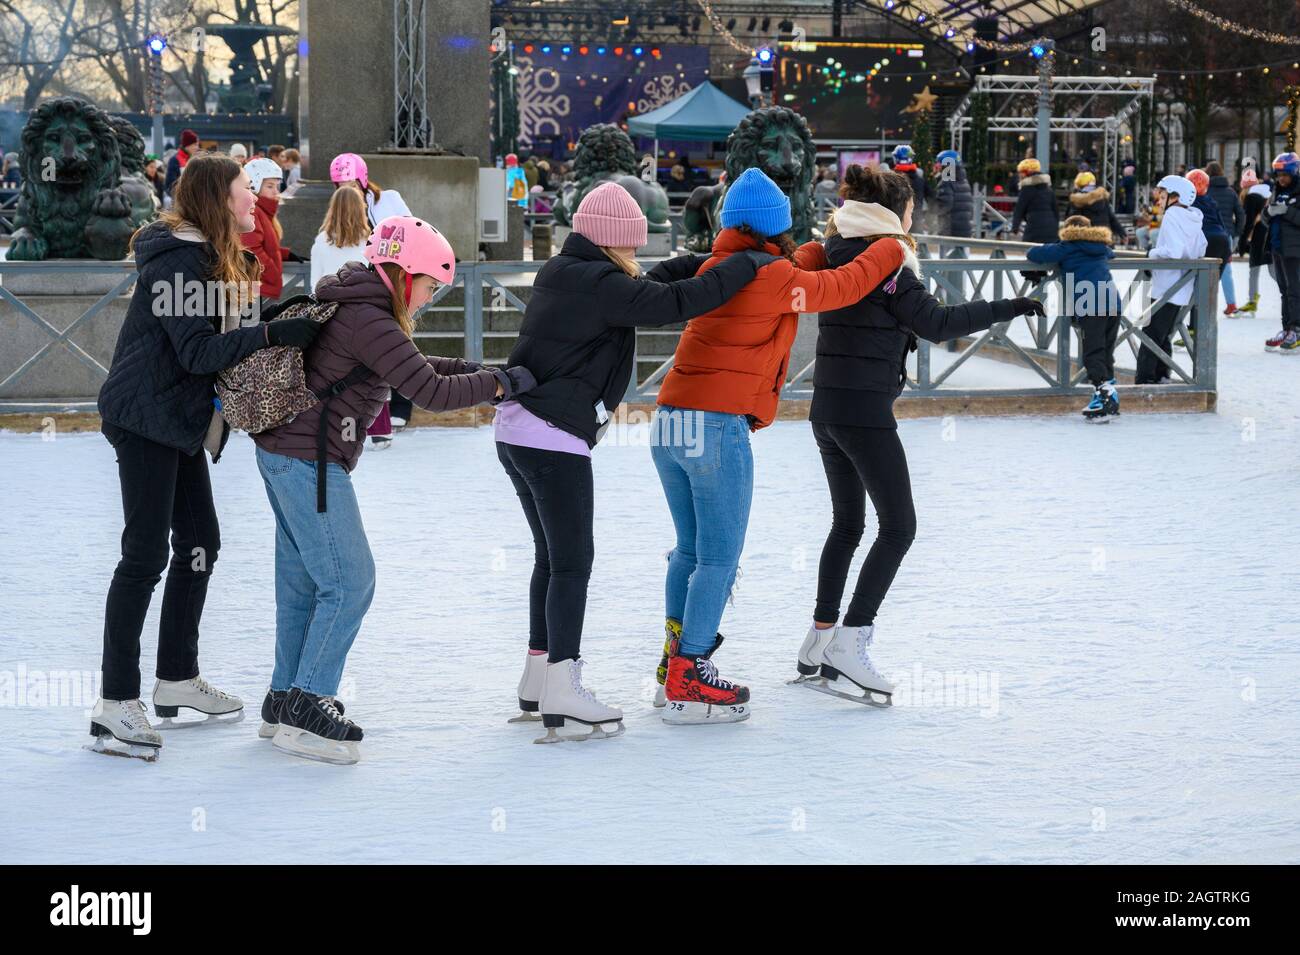 Stoccolma, Svezia, 18 Dicembre 2019: inverno atmosfera della città. La scuola dei bambini nella pista di pattinaggio sul ghiaccio in città. Tradizionale pista di pattinaggio sul ghiaccio nel parco Kun Foto Stock